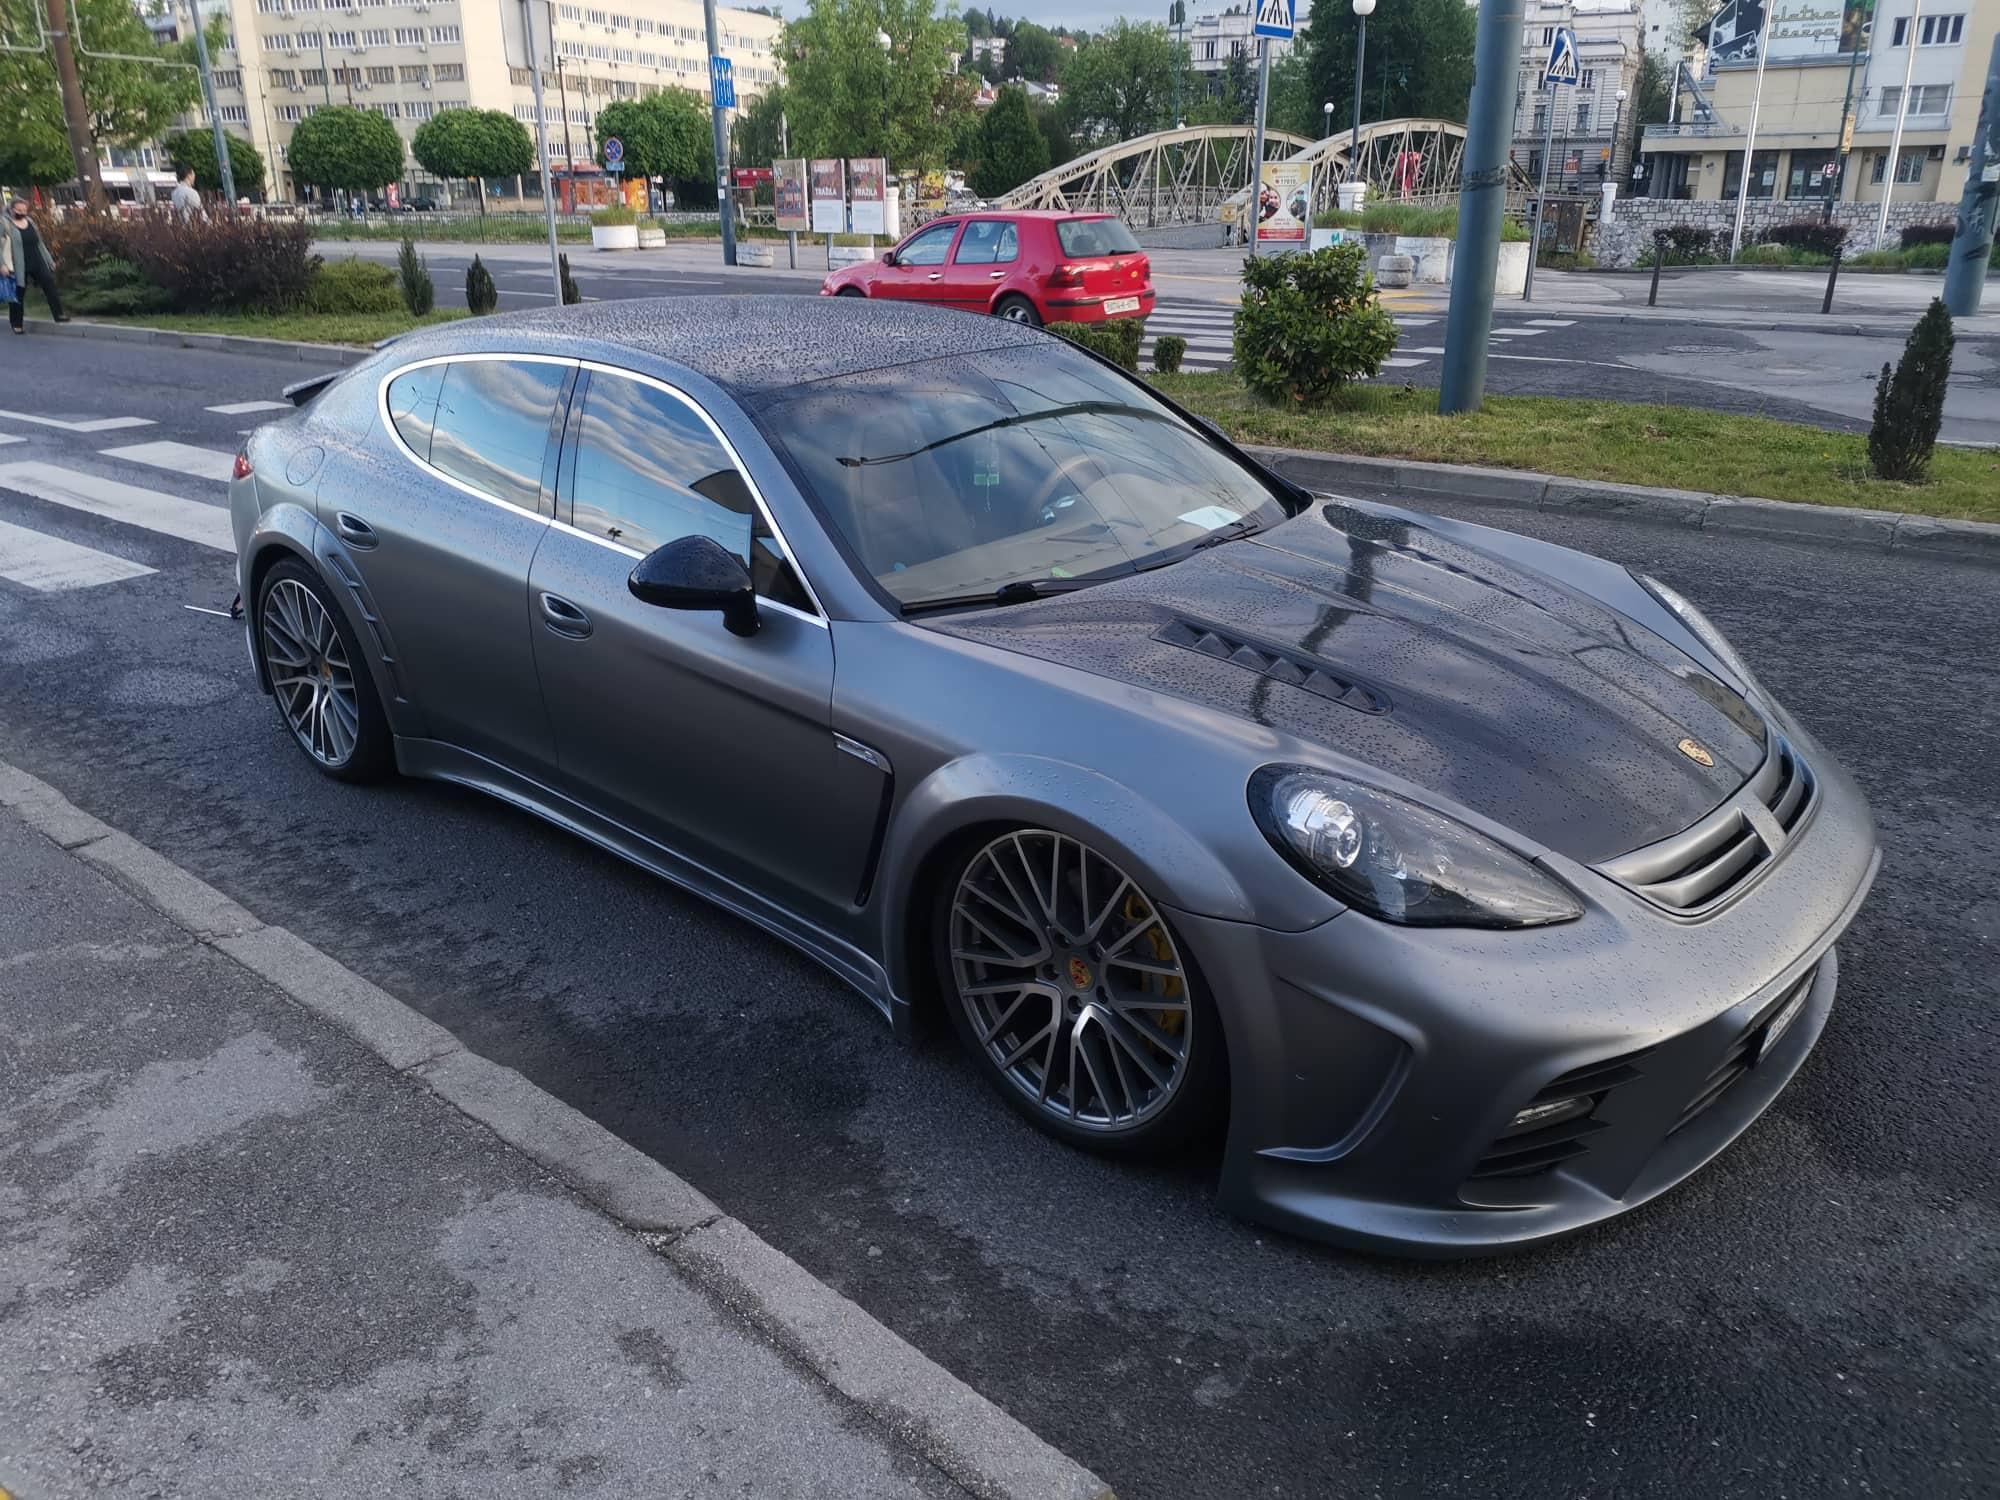 Skupocjeni Porsche ostao u kvaru nasred ulice na Skenderiji?